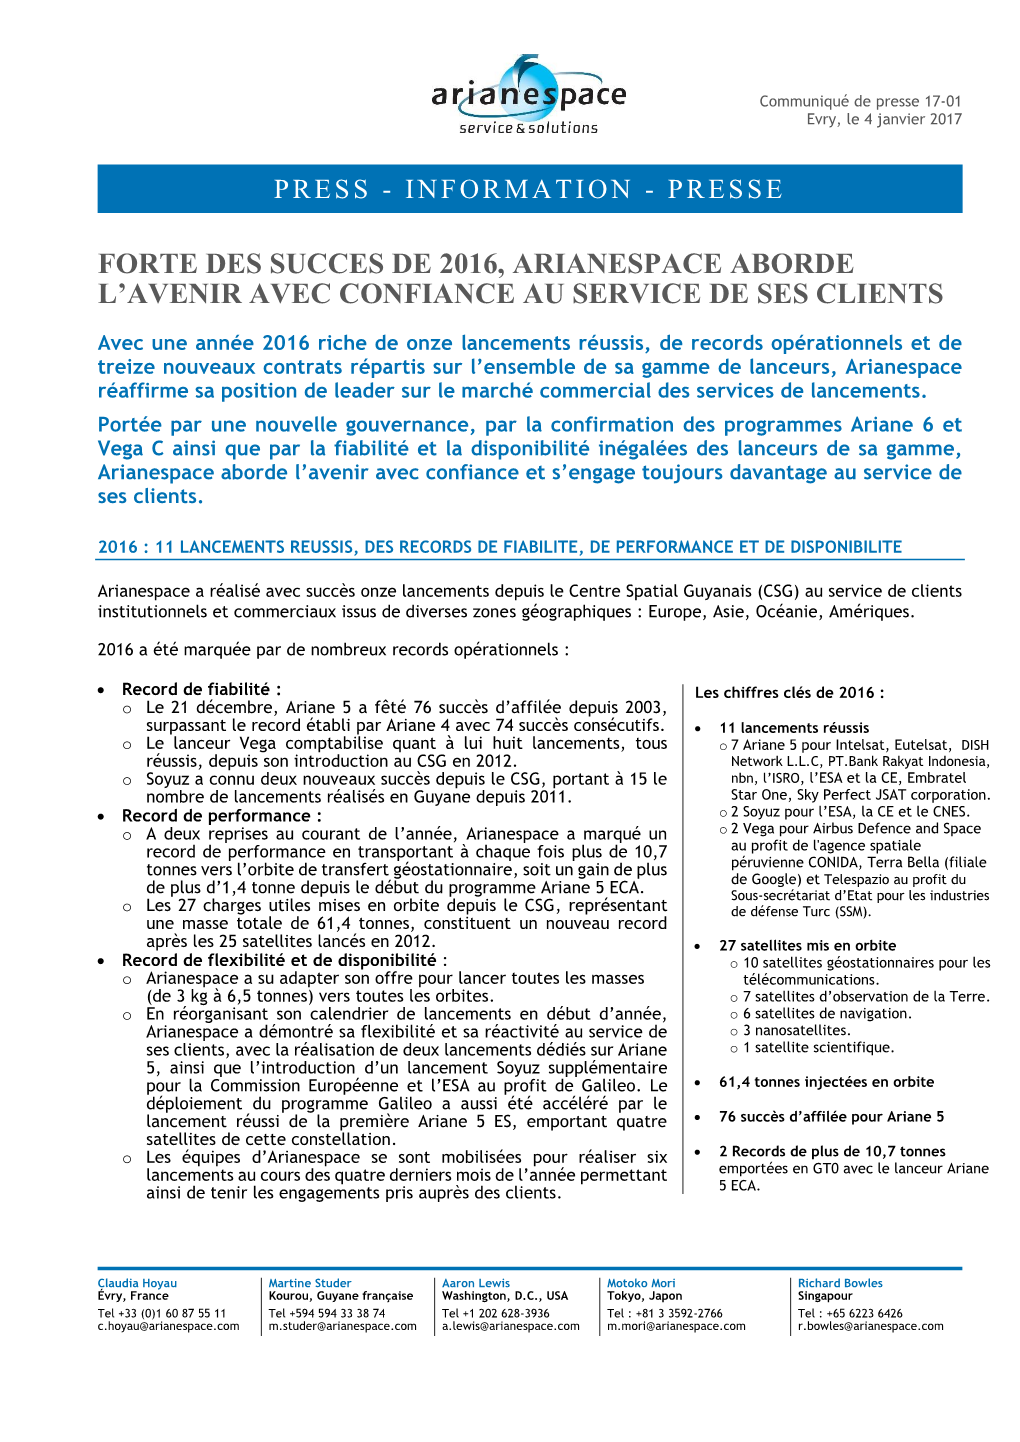 Forte Des Succes De 2016, Arianespace Aborde L’Avenir Avec Confiance Au Service De Ses Clients